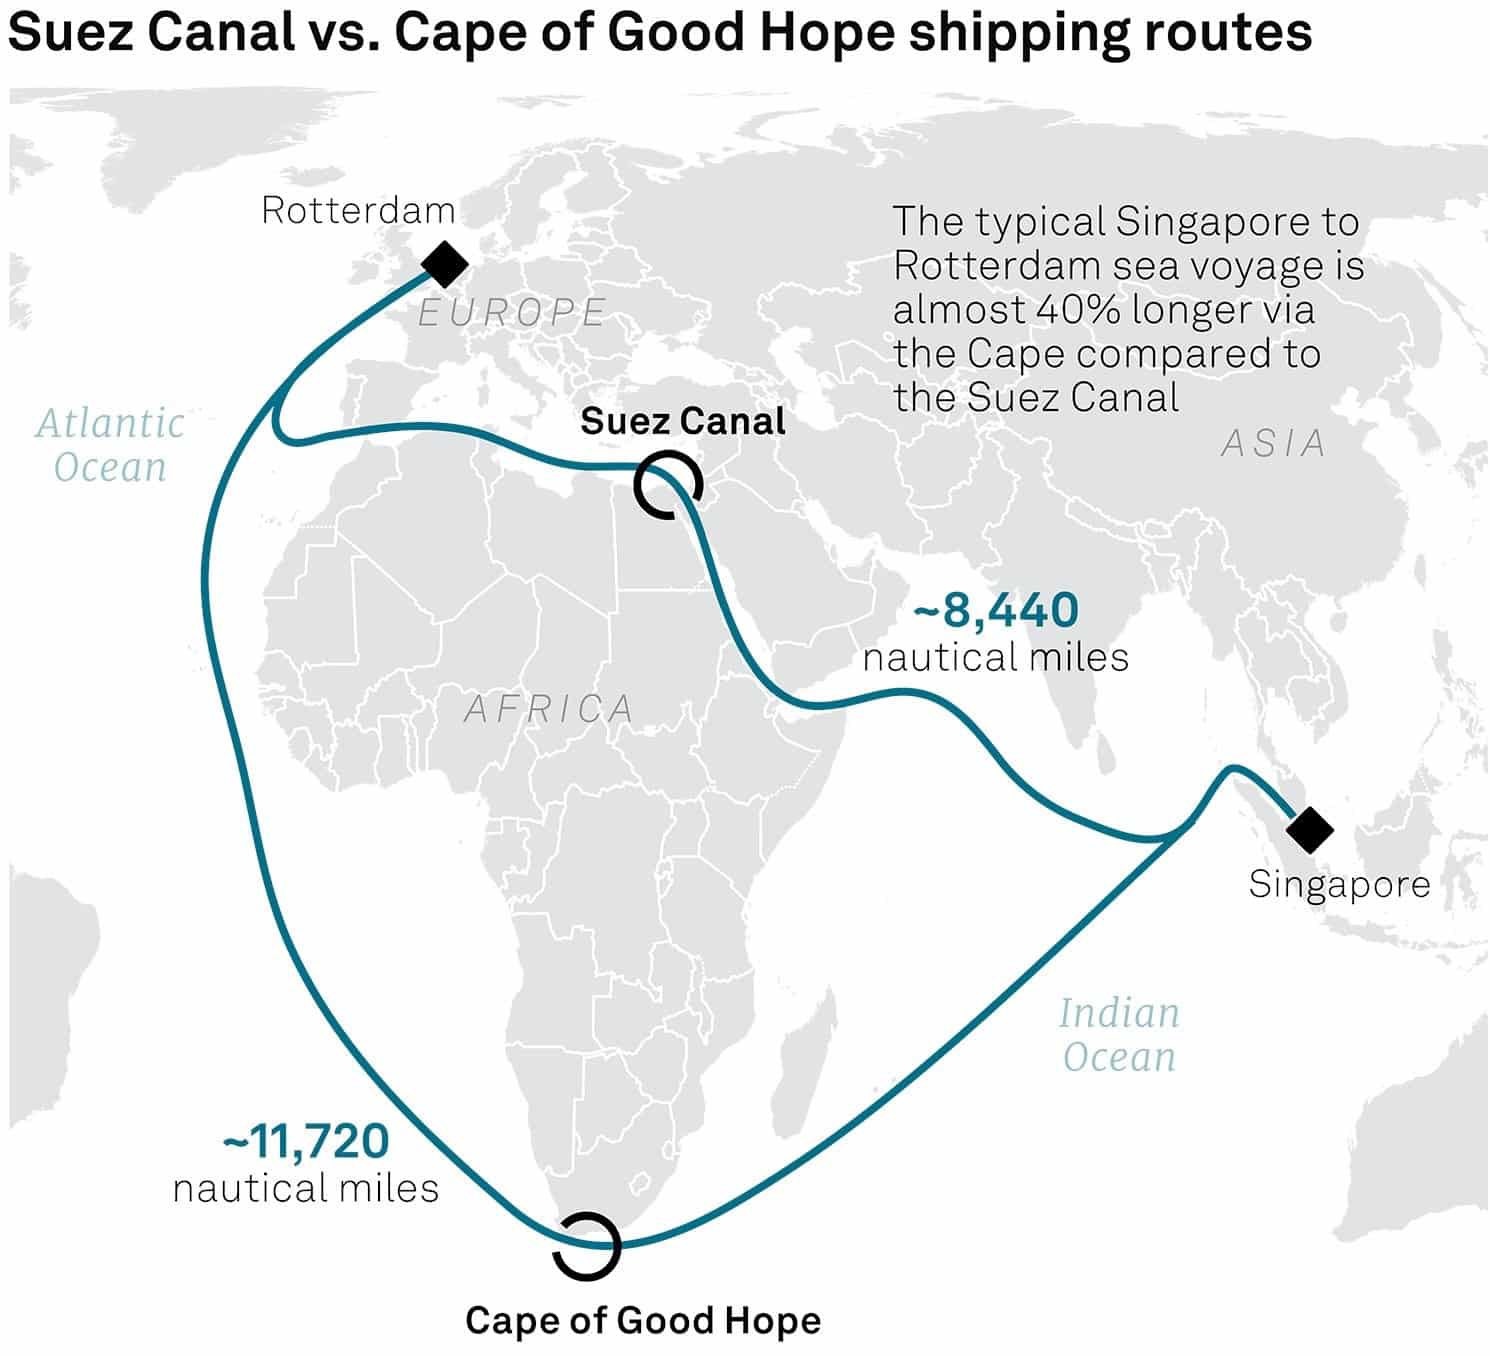 Die Karte vergleicht Schifffahrtsrouten vom Suezkanal und Kap der Guten Hoffnung, zeigt die Route von Singapur nach Rotterdam und betont, dass die Reise über das Kap fast 40% länger ist als durch den Suezkanal, mit 8.440 gegenüber 11.720 Seemeilen.